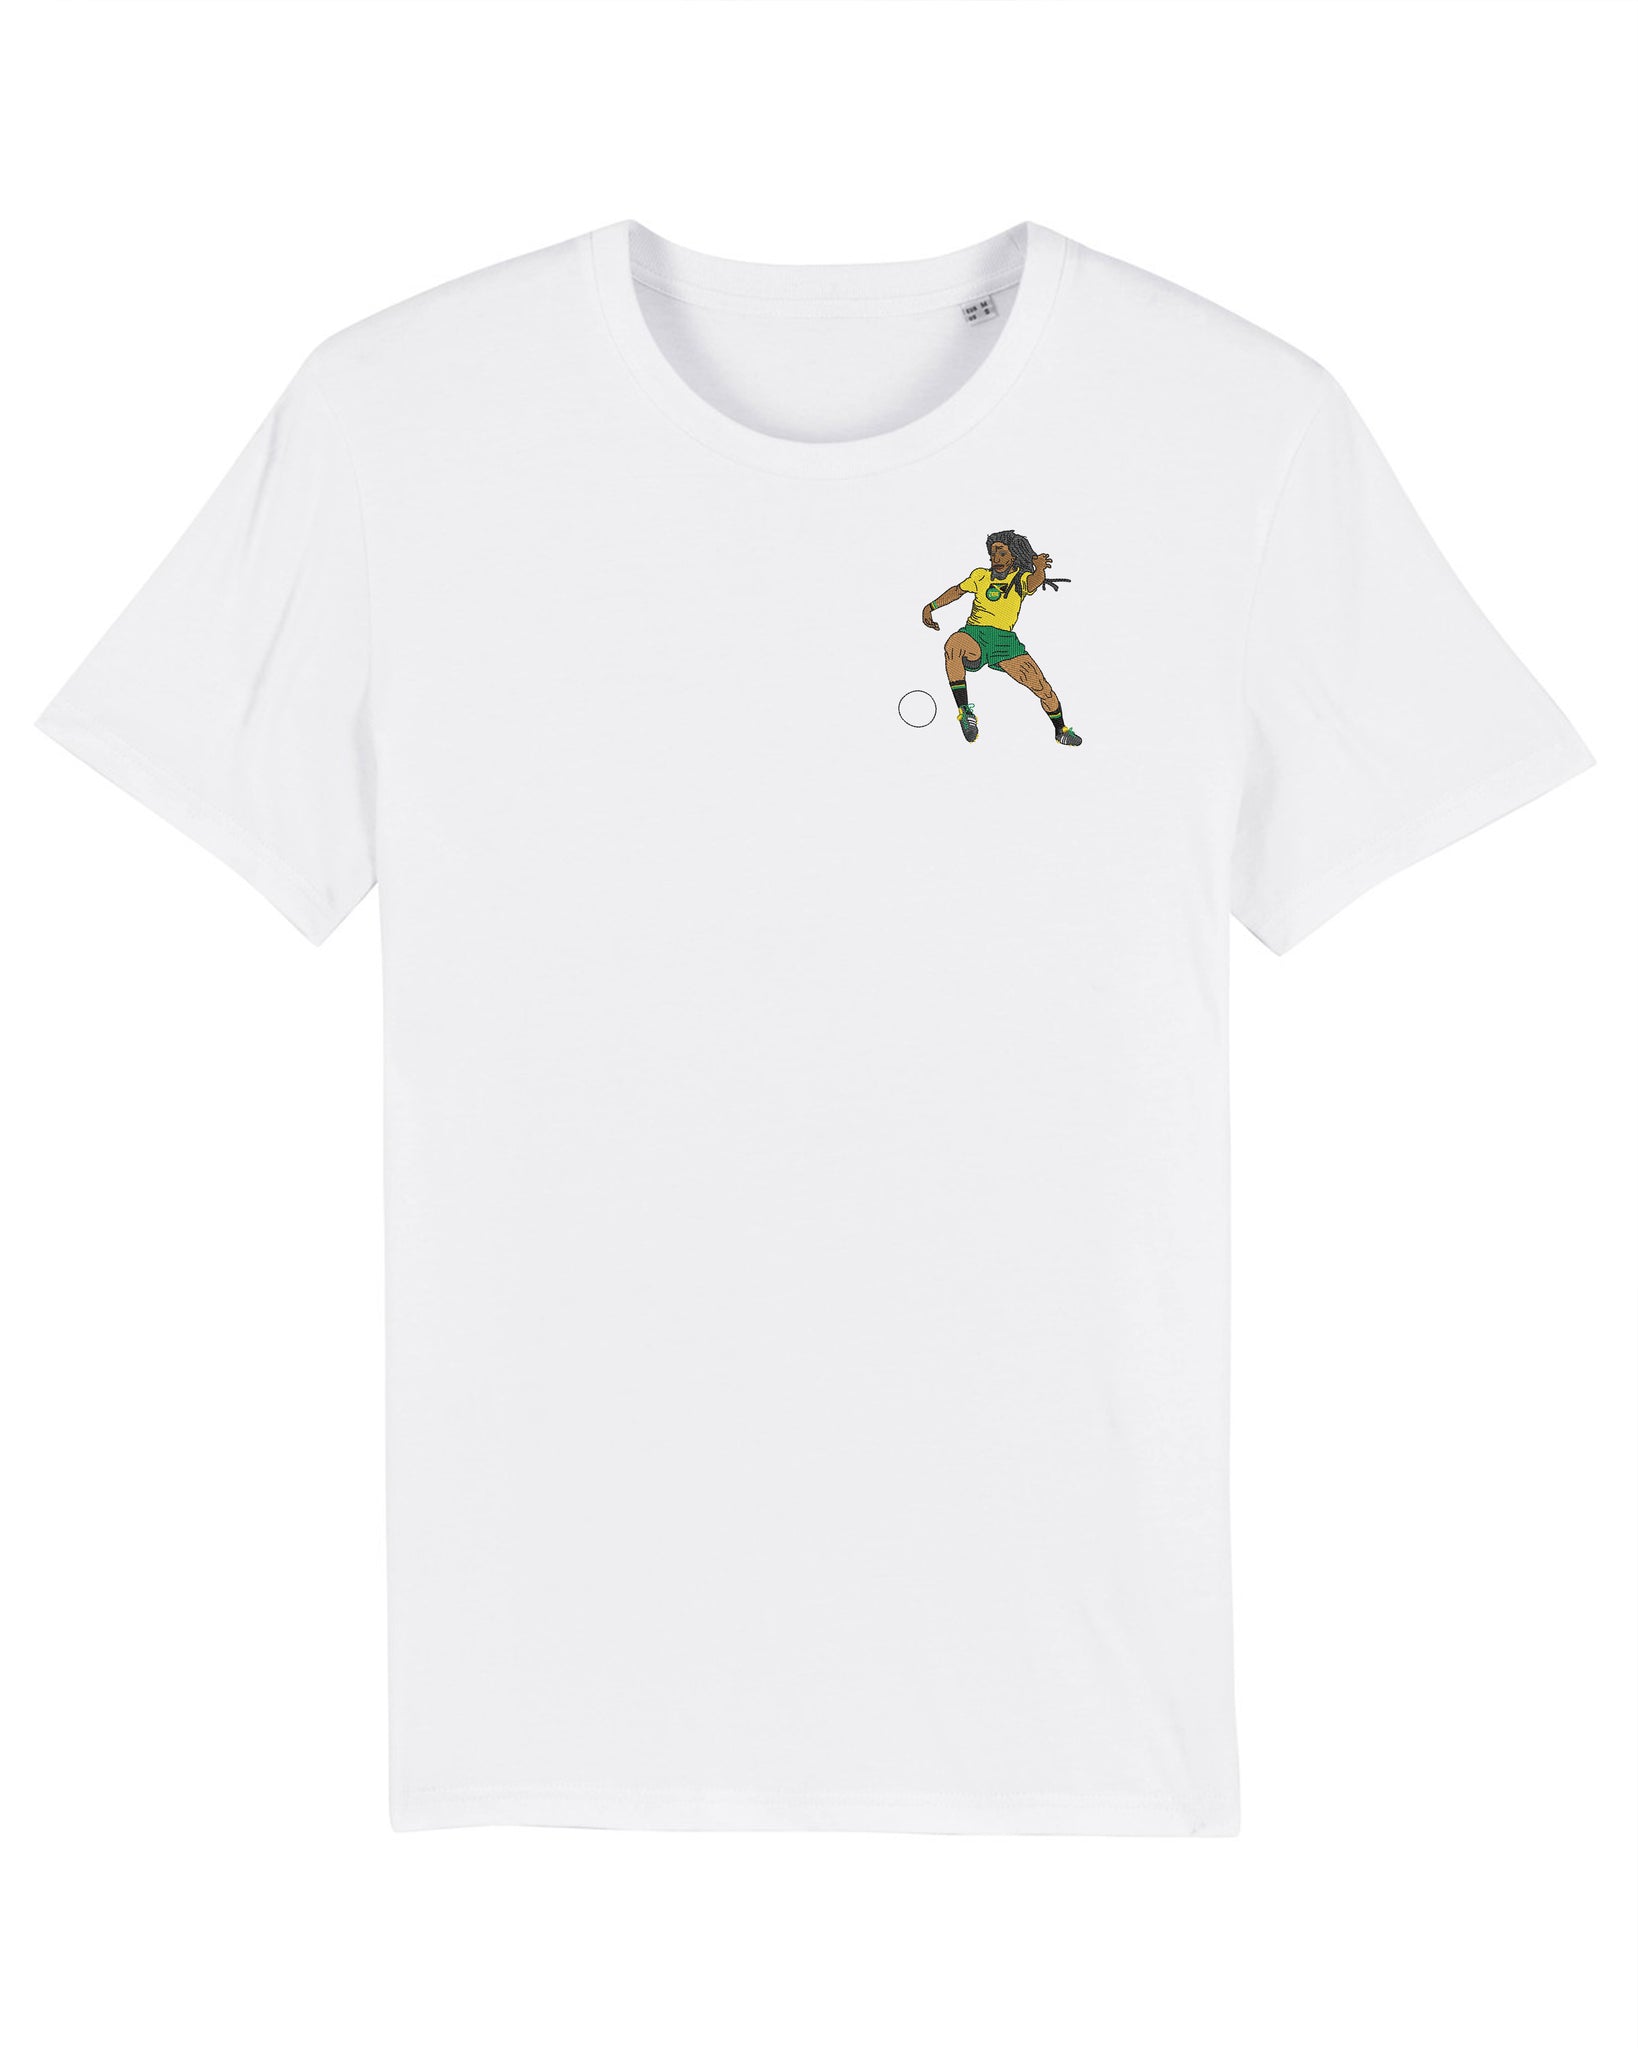 Tee Shirt Bob Marley